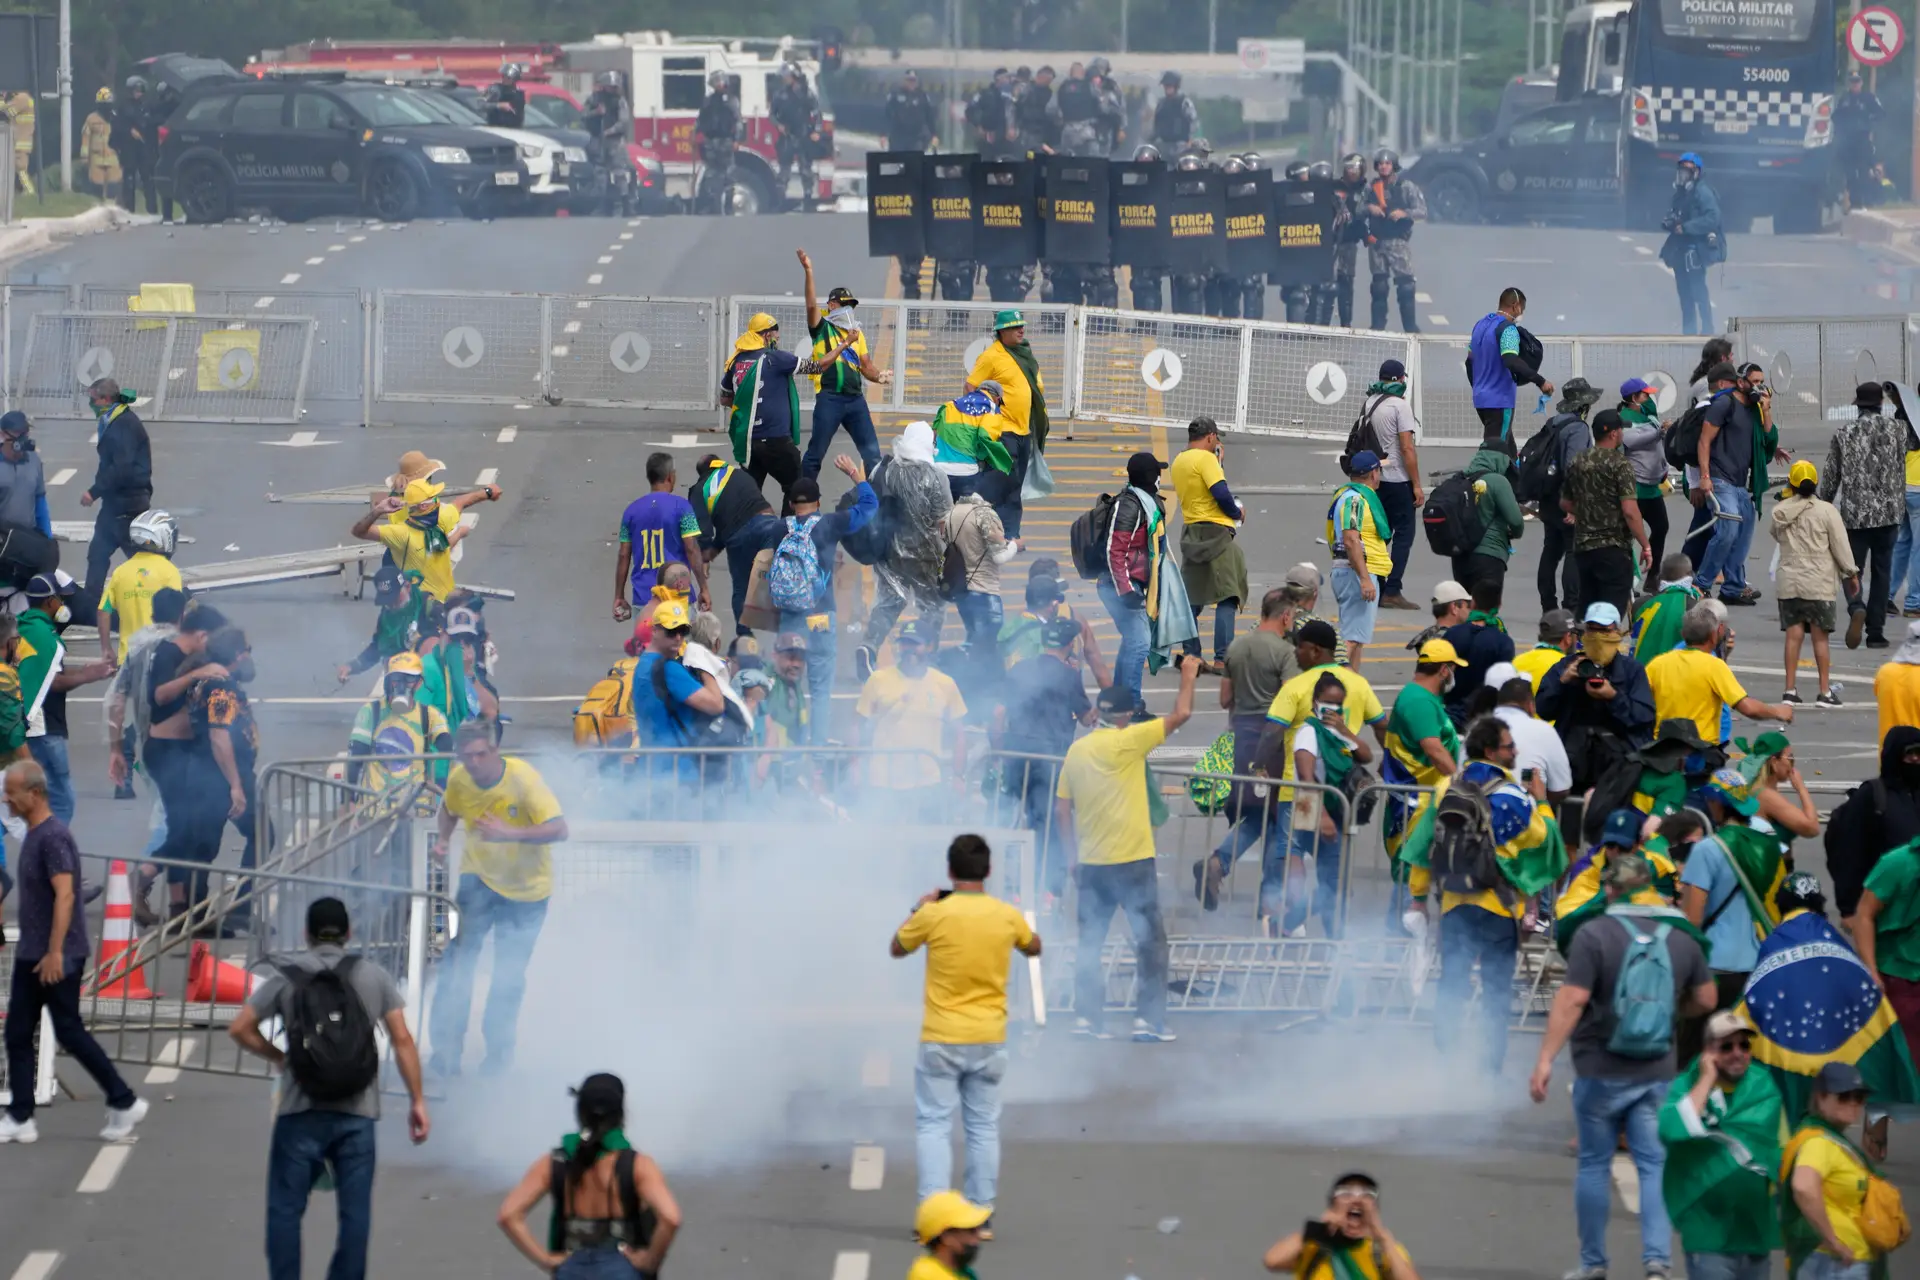 Invasão em Brasília: Marcelo condena atos "inadmissíveis e intoleráveis em democracia"